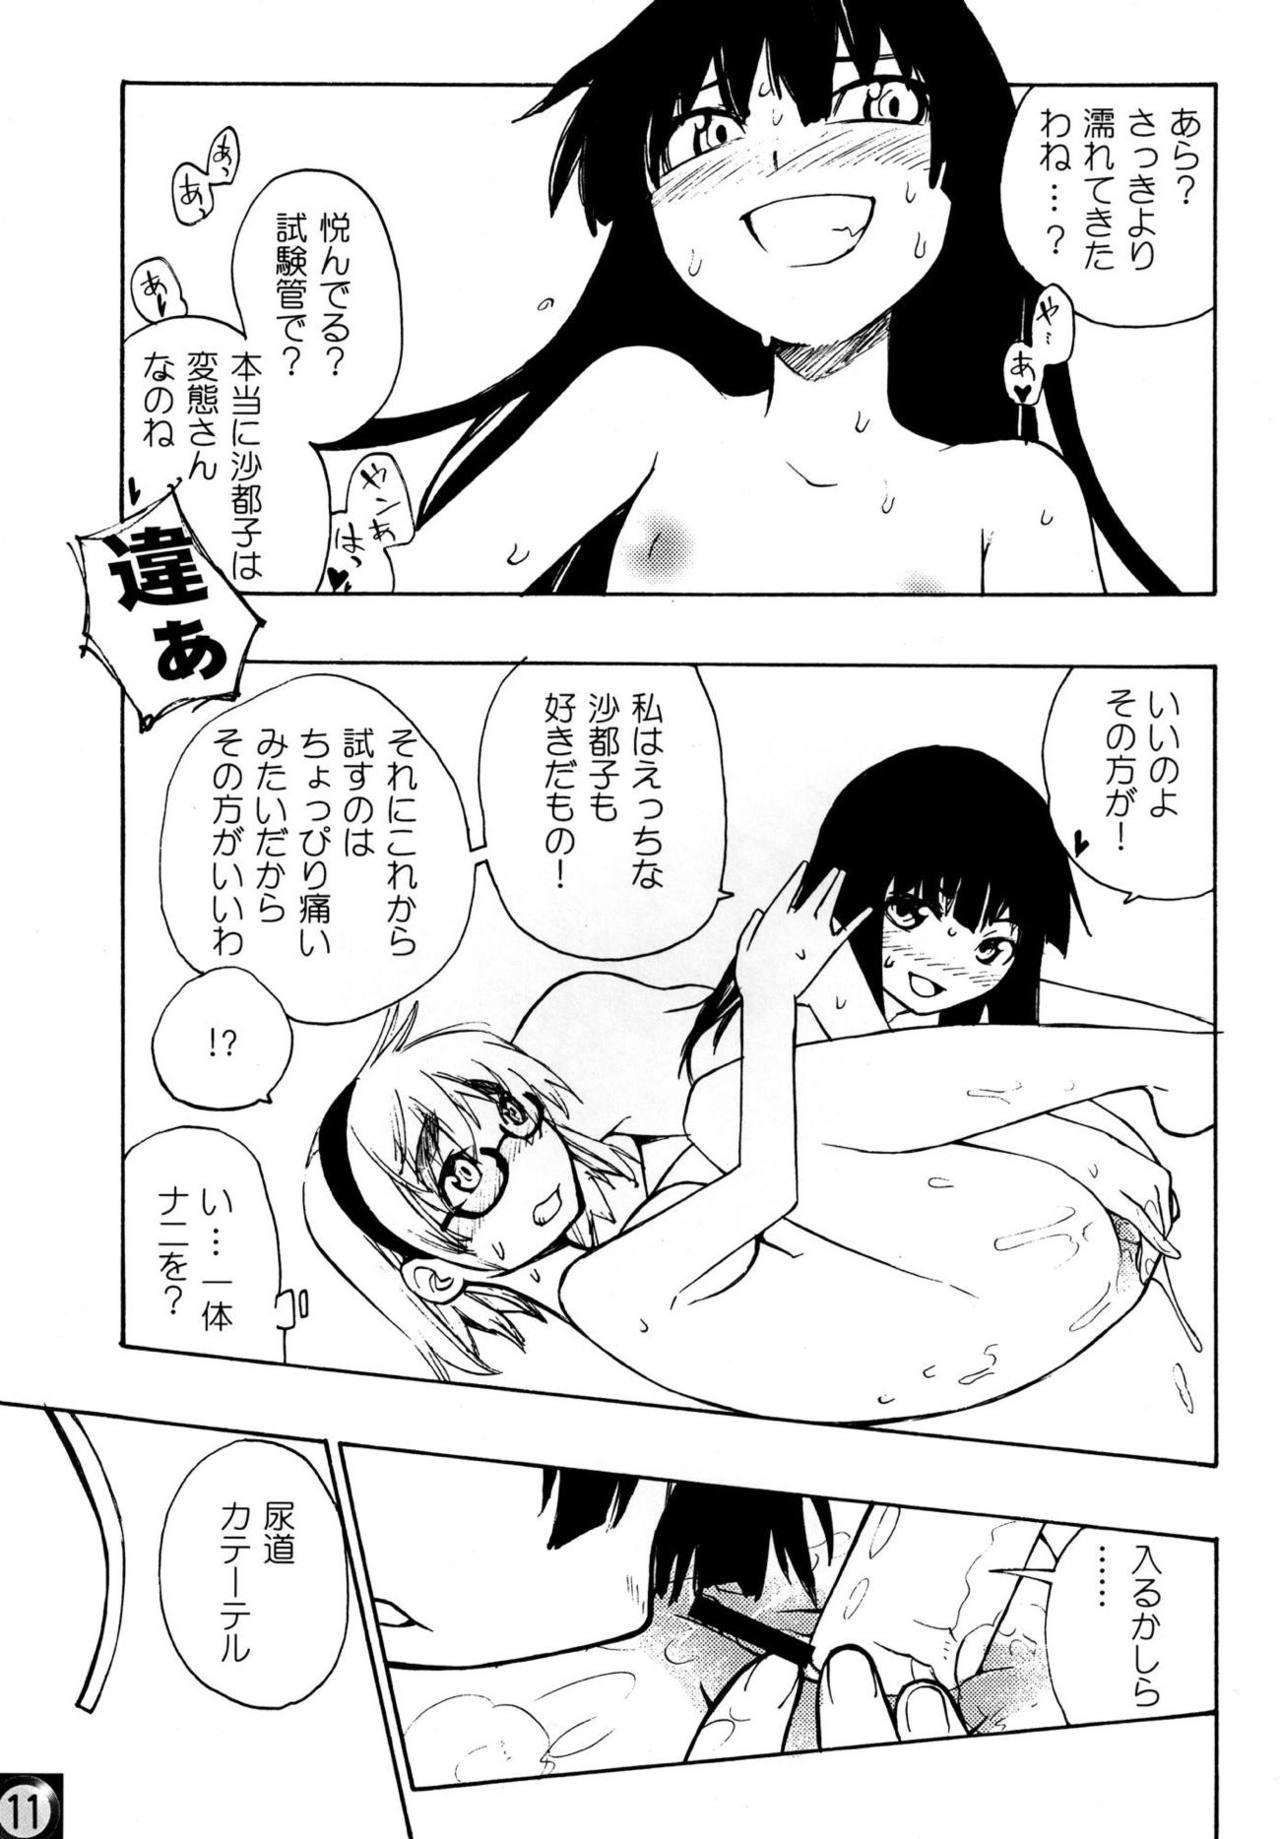 Web Ecchi ja Nai to Ikenai to Omoimasu!! - Higurashi no naku koro ni Masturbacion - Page 10